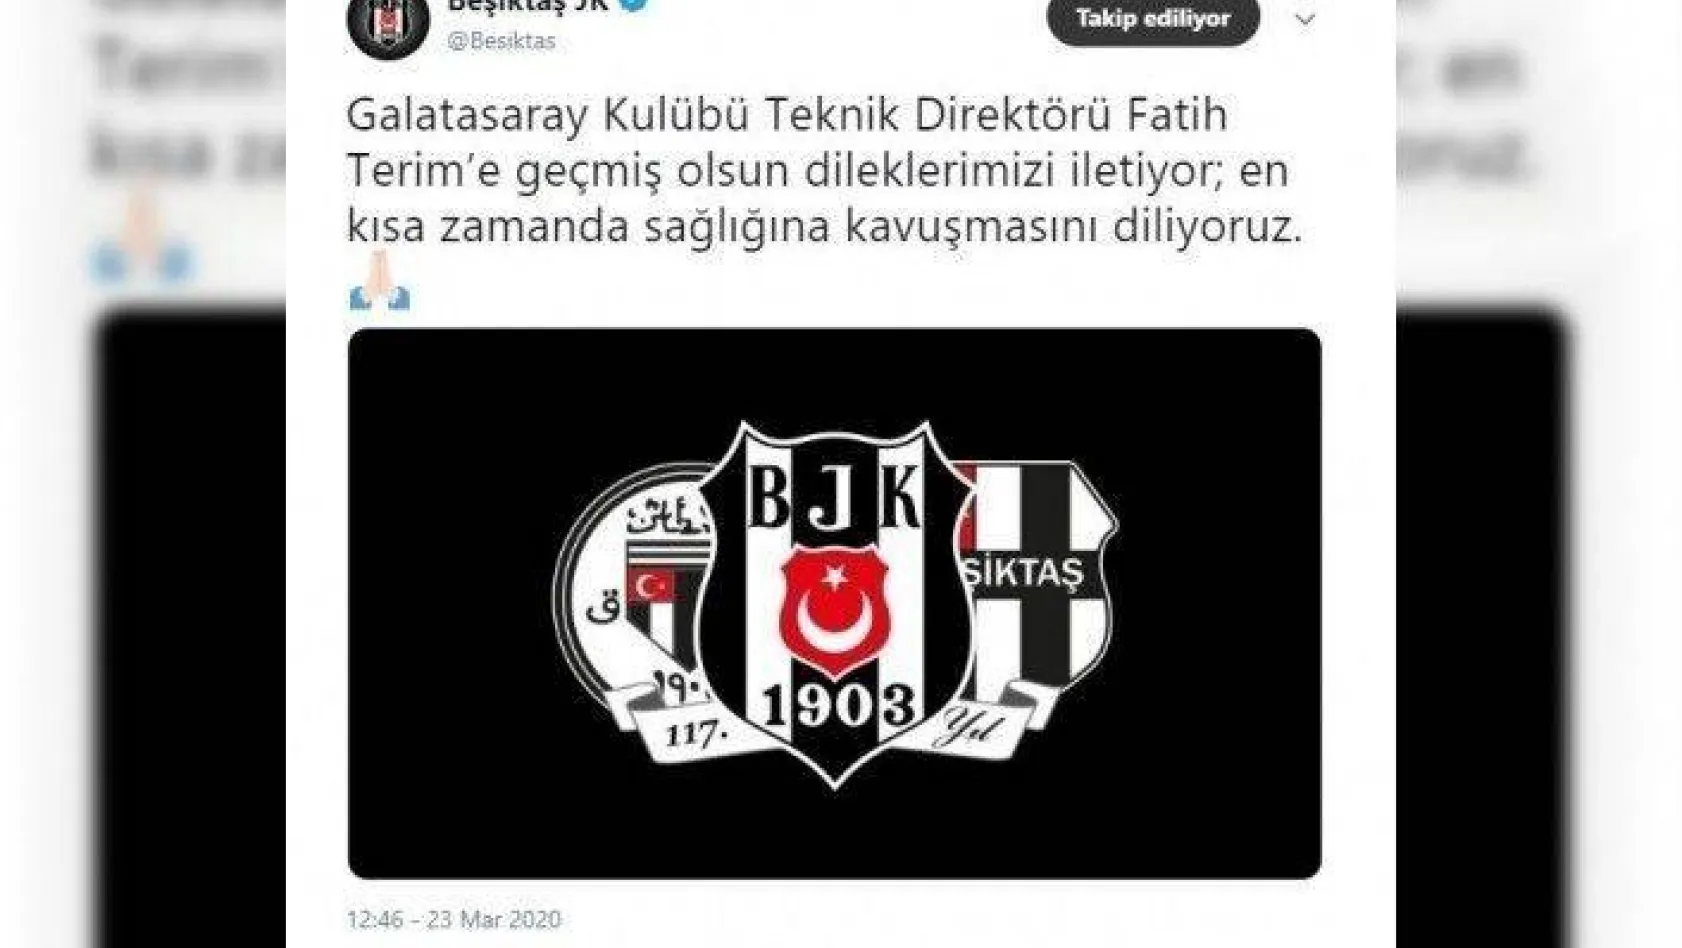 Beşiktaş'tan Fatih Terim'e geçmiş olsun mesajı